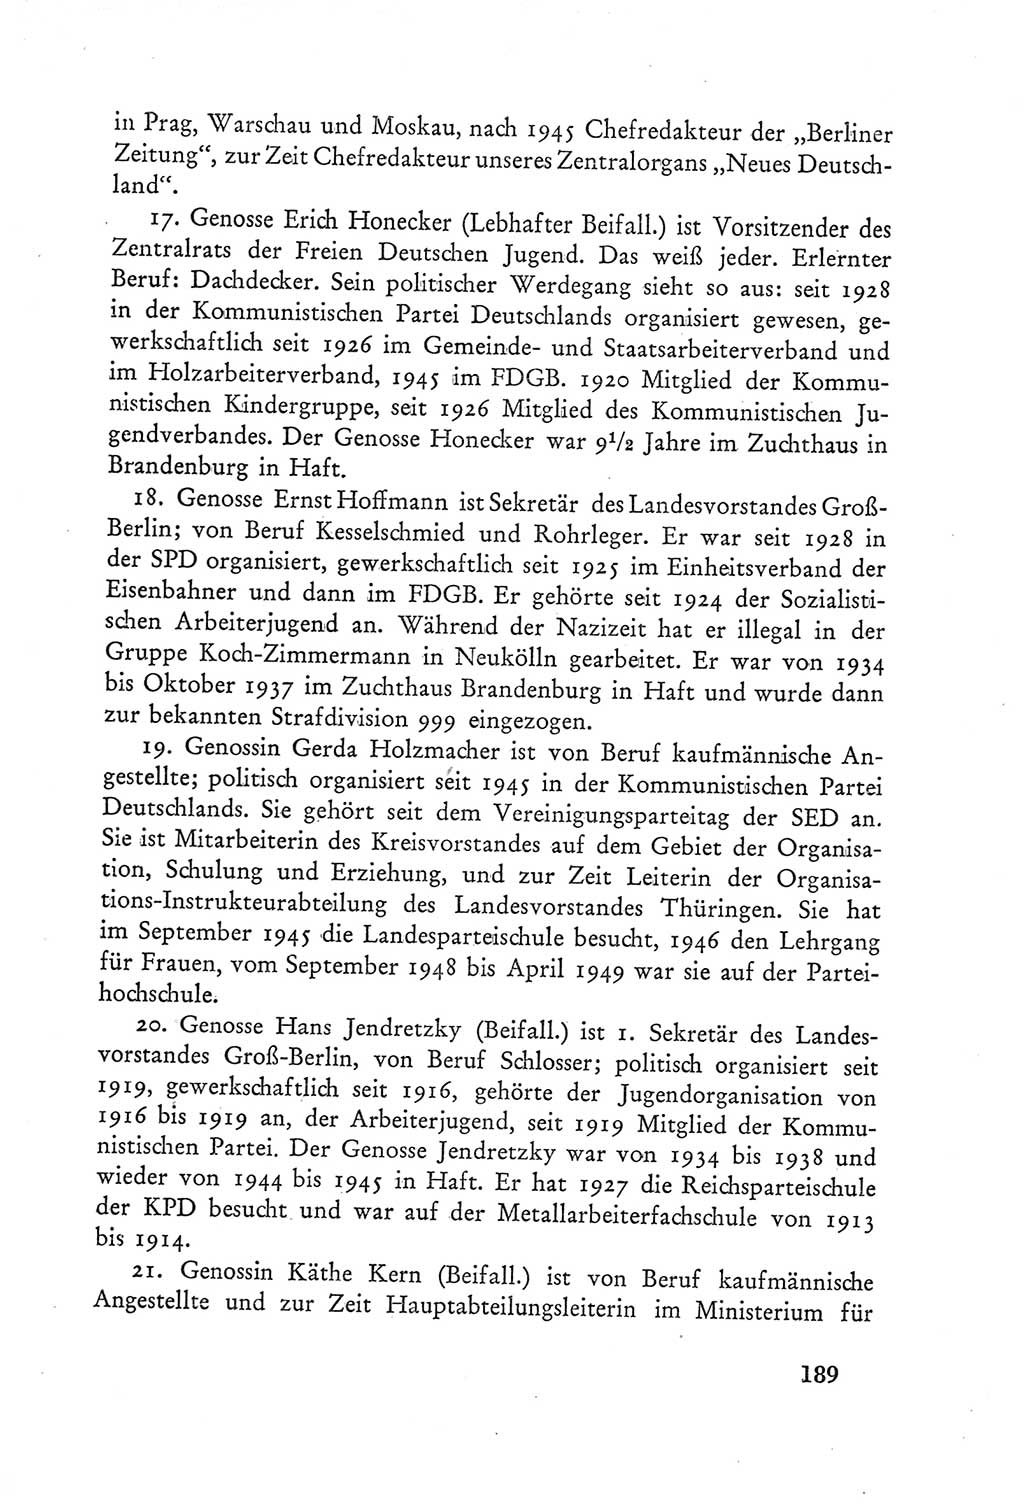 Protokoll der Verhandlungen des Ⅲ. Parteitages der Sozialistischen Einheitspartei Deutschlands (SED) [Deutsche Demokratische Republik (DDR)] 1950, Band 2, Seite 189 (Prot. Verh. Ⅲ. PT SED DDR 1950, Bd. 2, S. 189)